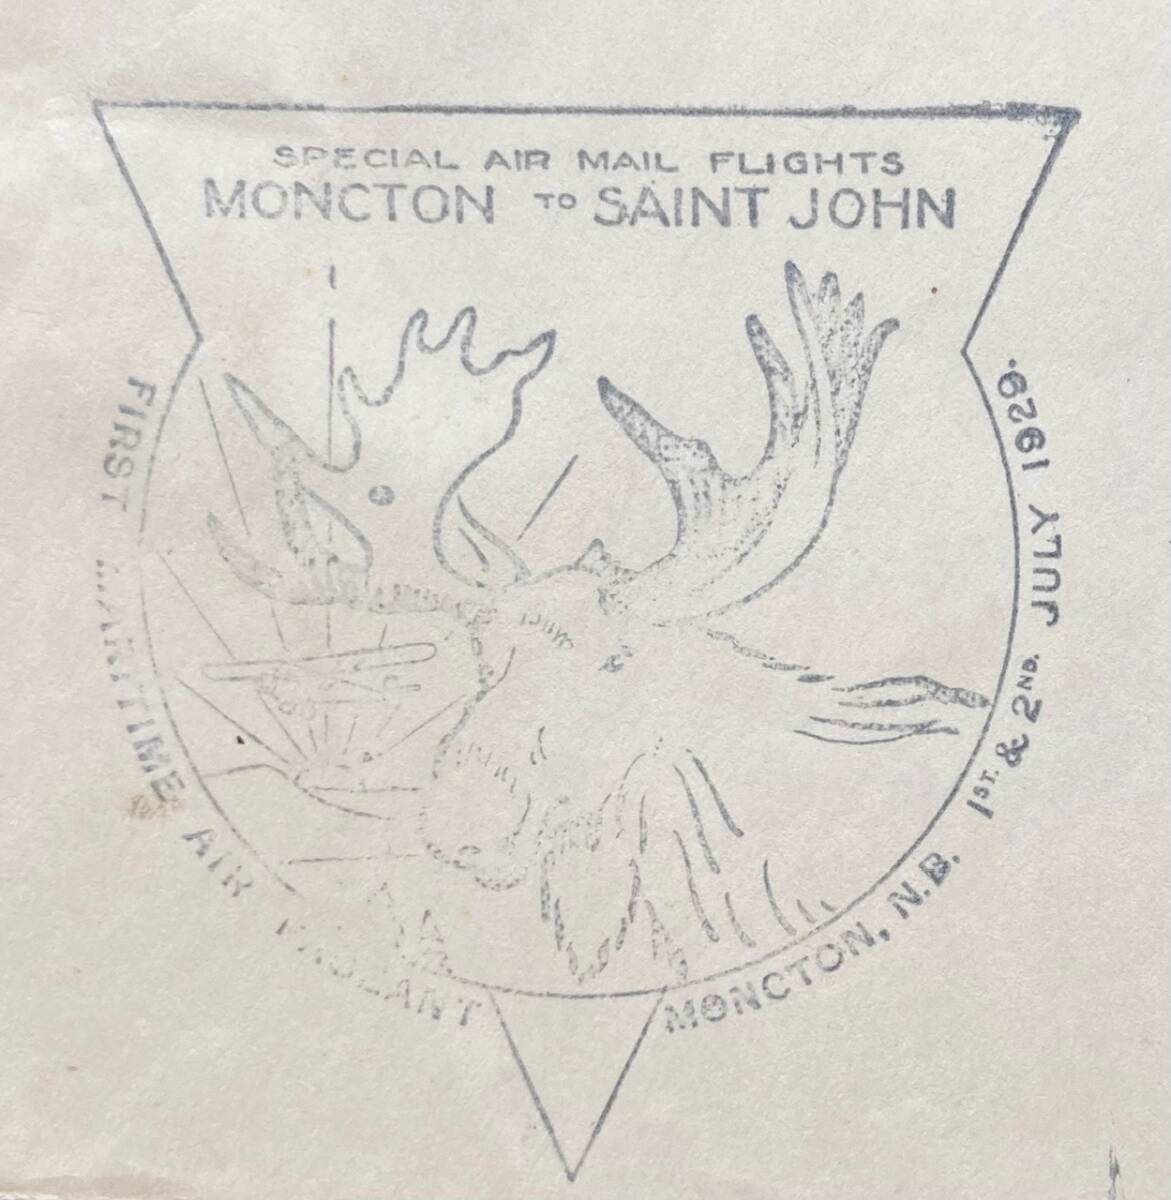 [ Canada ]1929 год первый период FFC~MONCTON-SAINT JOHN( новый Blanc zwik)* полет Event специальный авиапочта ~ Canada самый первый. марки с авиатематикой . хорошая вещь 